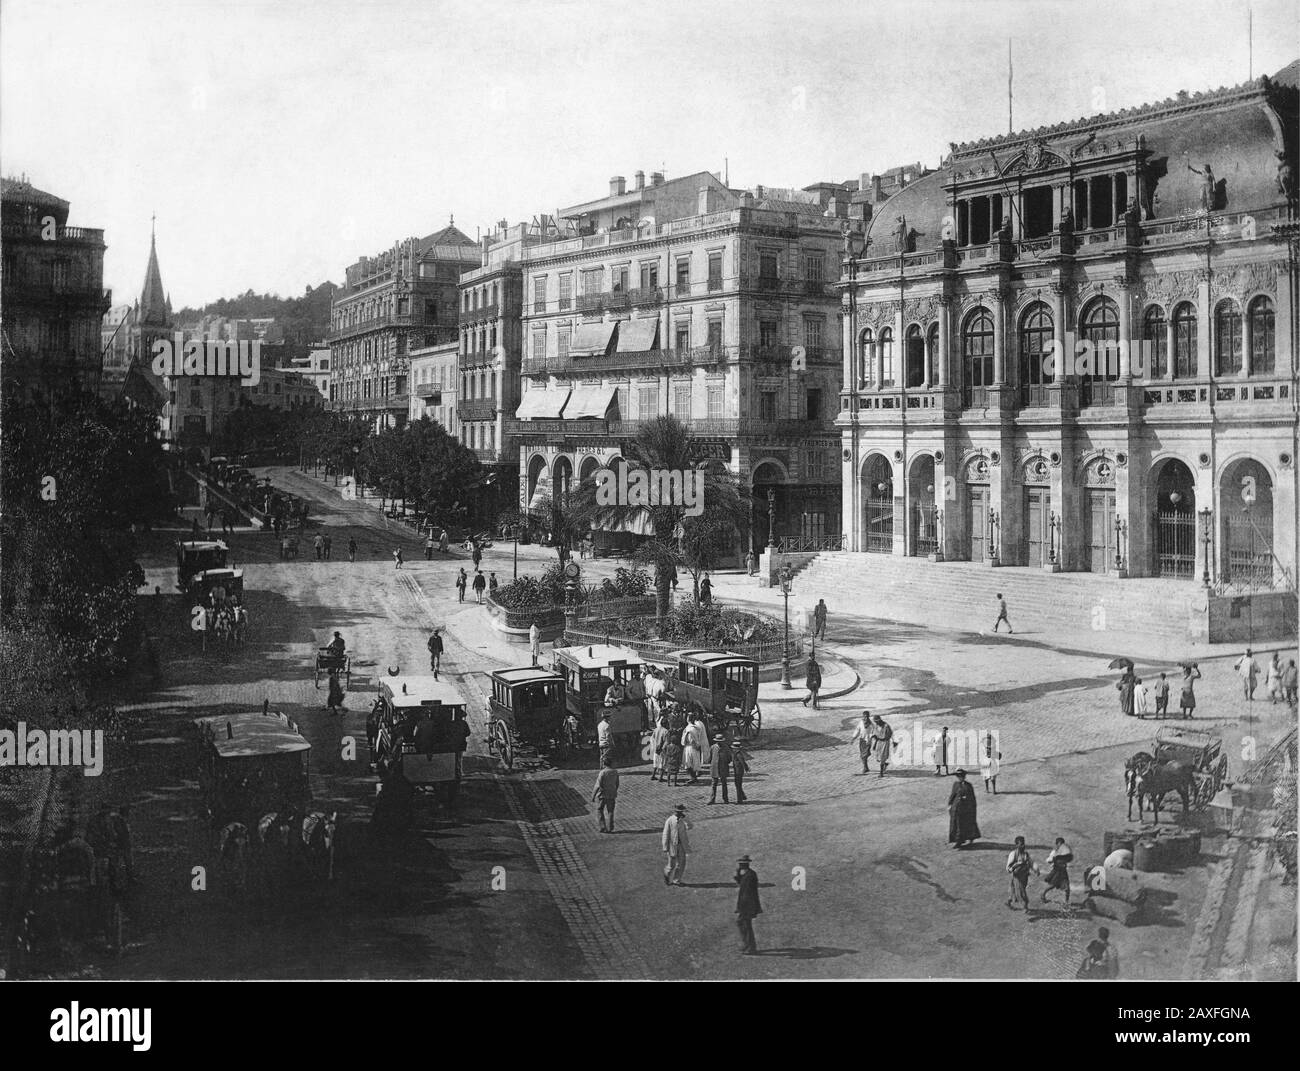 1890 ca , ALGERI , ALGERIA : LA PLACE BRESSON ( Oggi Place Port Said ) e IL TEATRO ( oggi Teatro Nazionale algerino - il Teatro dell'Opera ) - PIAZZA - PALAZZO PAPALE - FOTO STORICHE - FOTO STORICHE - STOCK - GEOGRAFIA - GEOGRAFIA - ARCHITETTURA - ARCHITETTURA - COLONIA - COLONIA - COLONIALISMO - COLONIALISMO FRANCESE - ALGERIA - ALGERI - PIAZZA - NORD AFRICA - MAGREB - OMINIBUS A CAVALLI - FOLLA - FOLLA - Gente - passanti - Alger la Blanche © Archivio GBB / Foto Stock